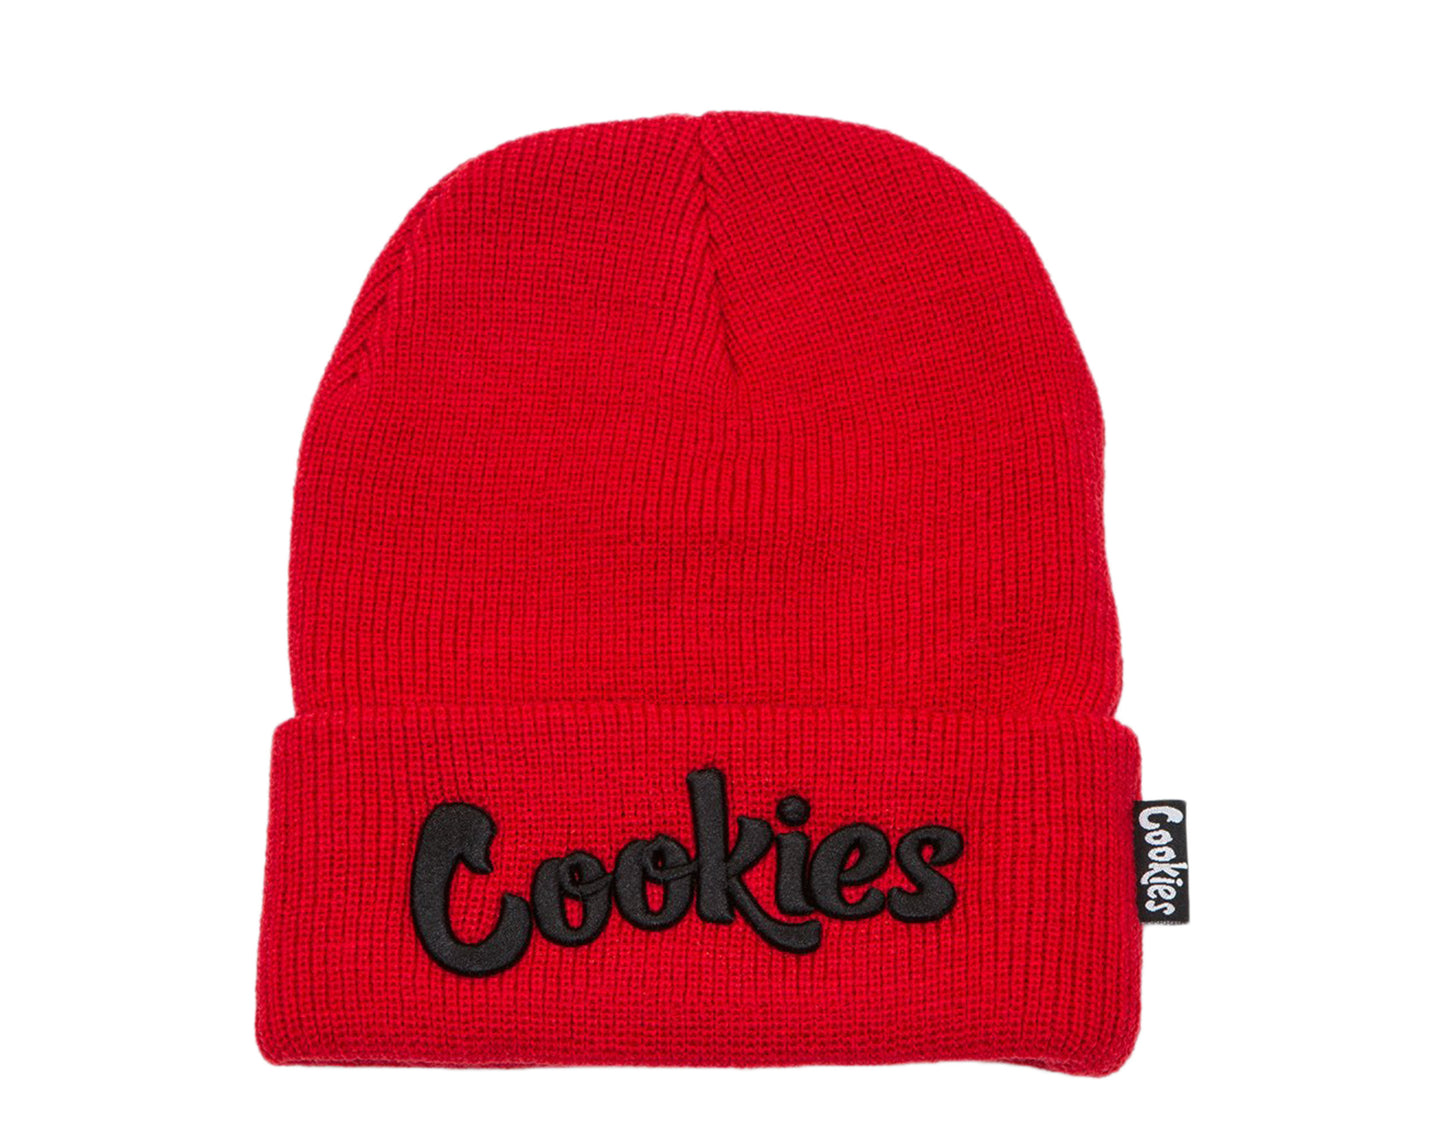 Cookies Original Logo Thin Mint Knit Beanie Red/Black Men's Hat 1536X3362-RDB